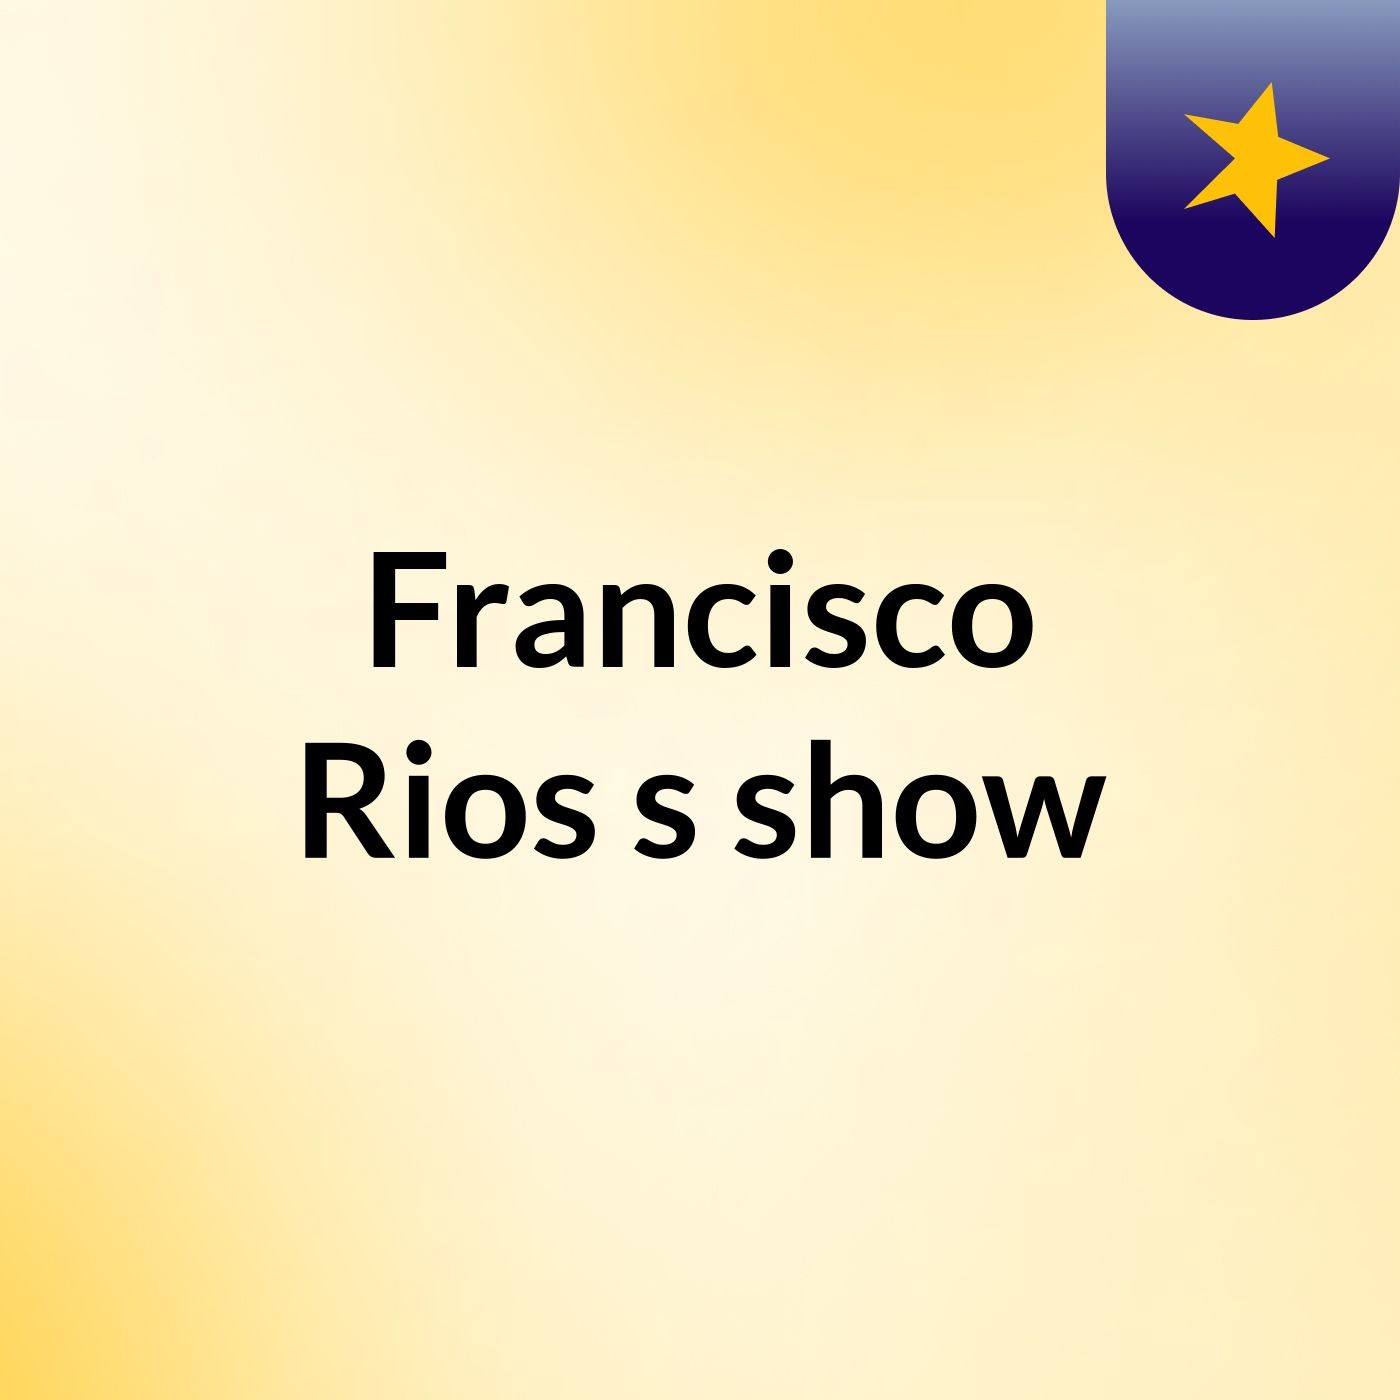 Francisco Rios's show